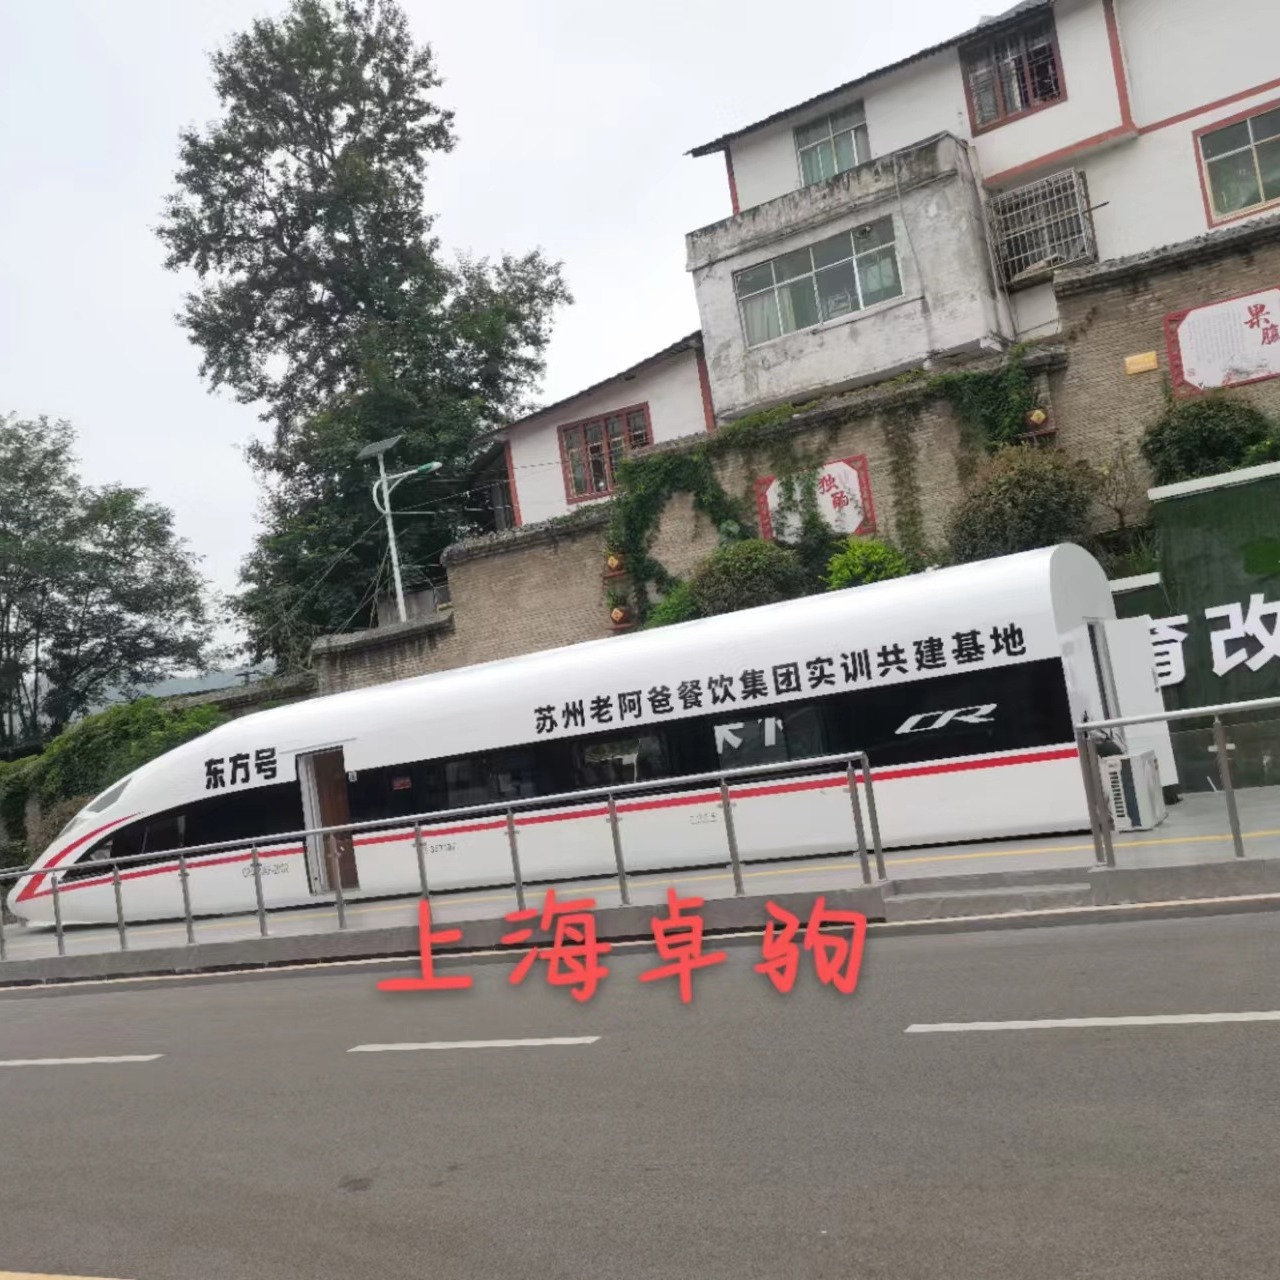 贵州新东方烹饪学院定制18米高铁模拟舱作餐饮实训基地上海卓驹制作